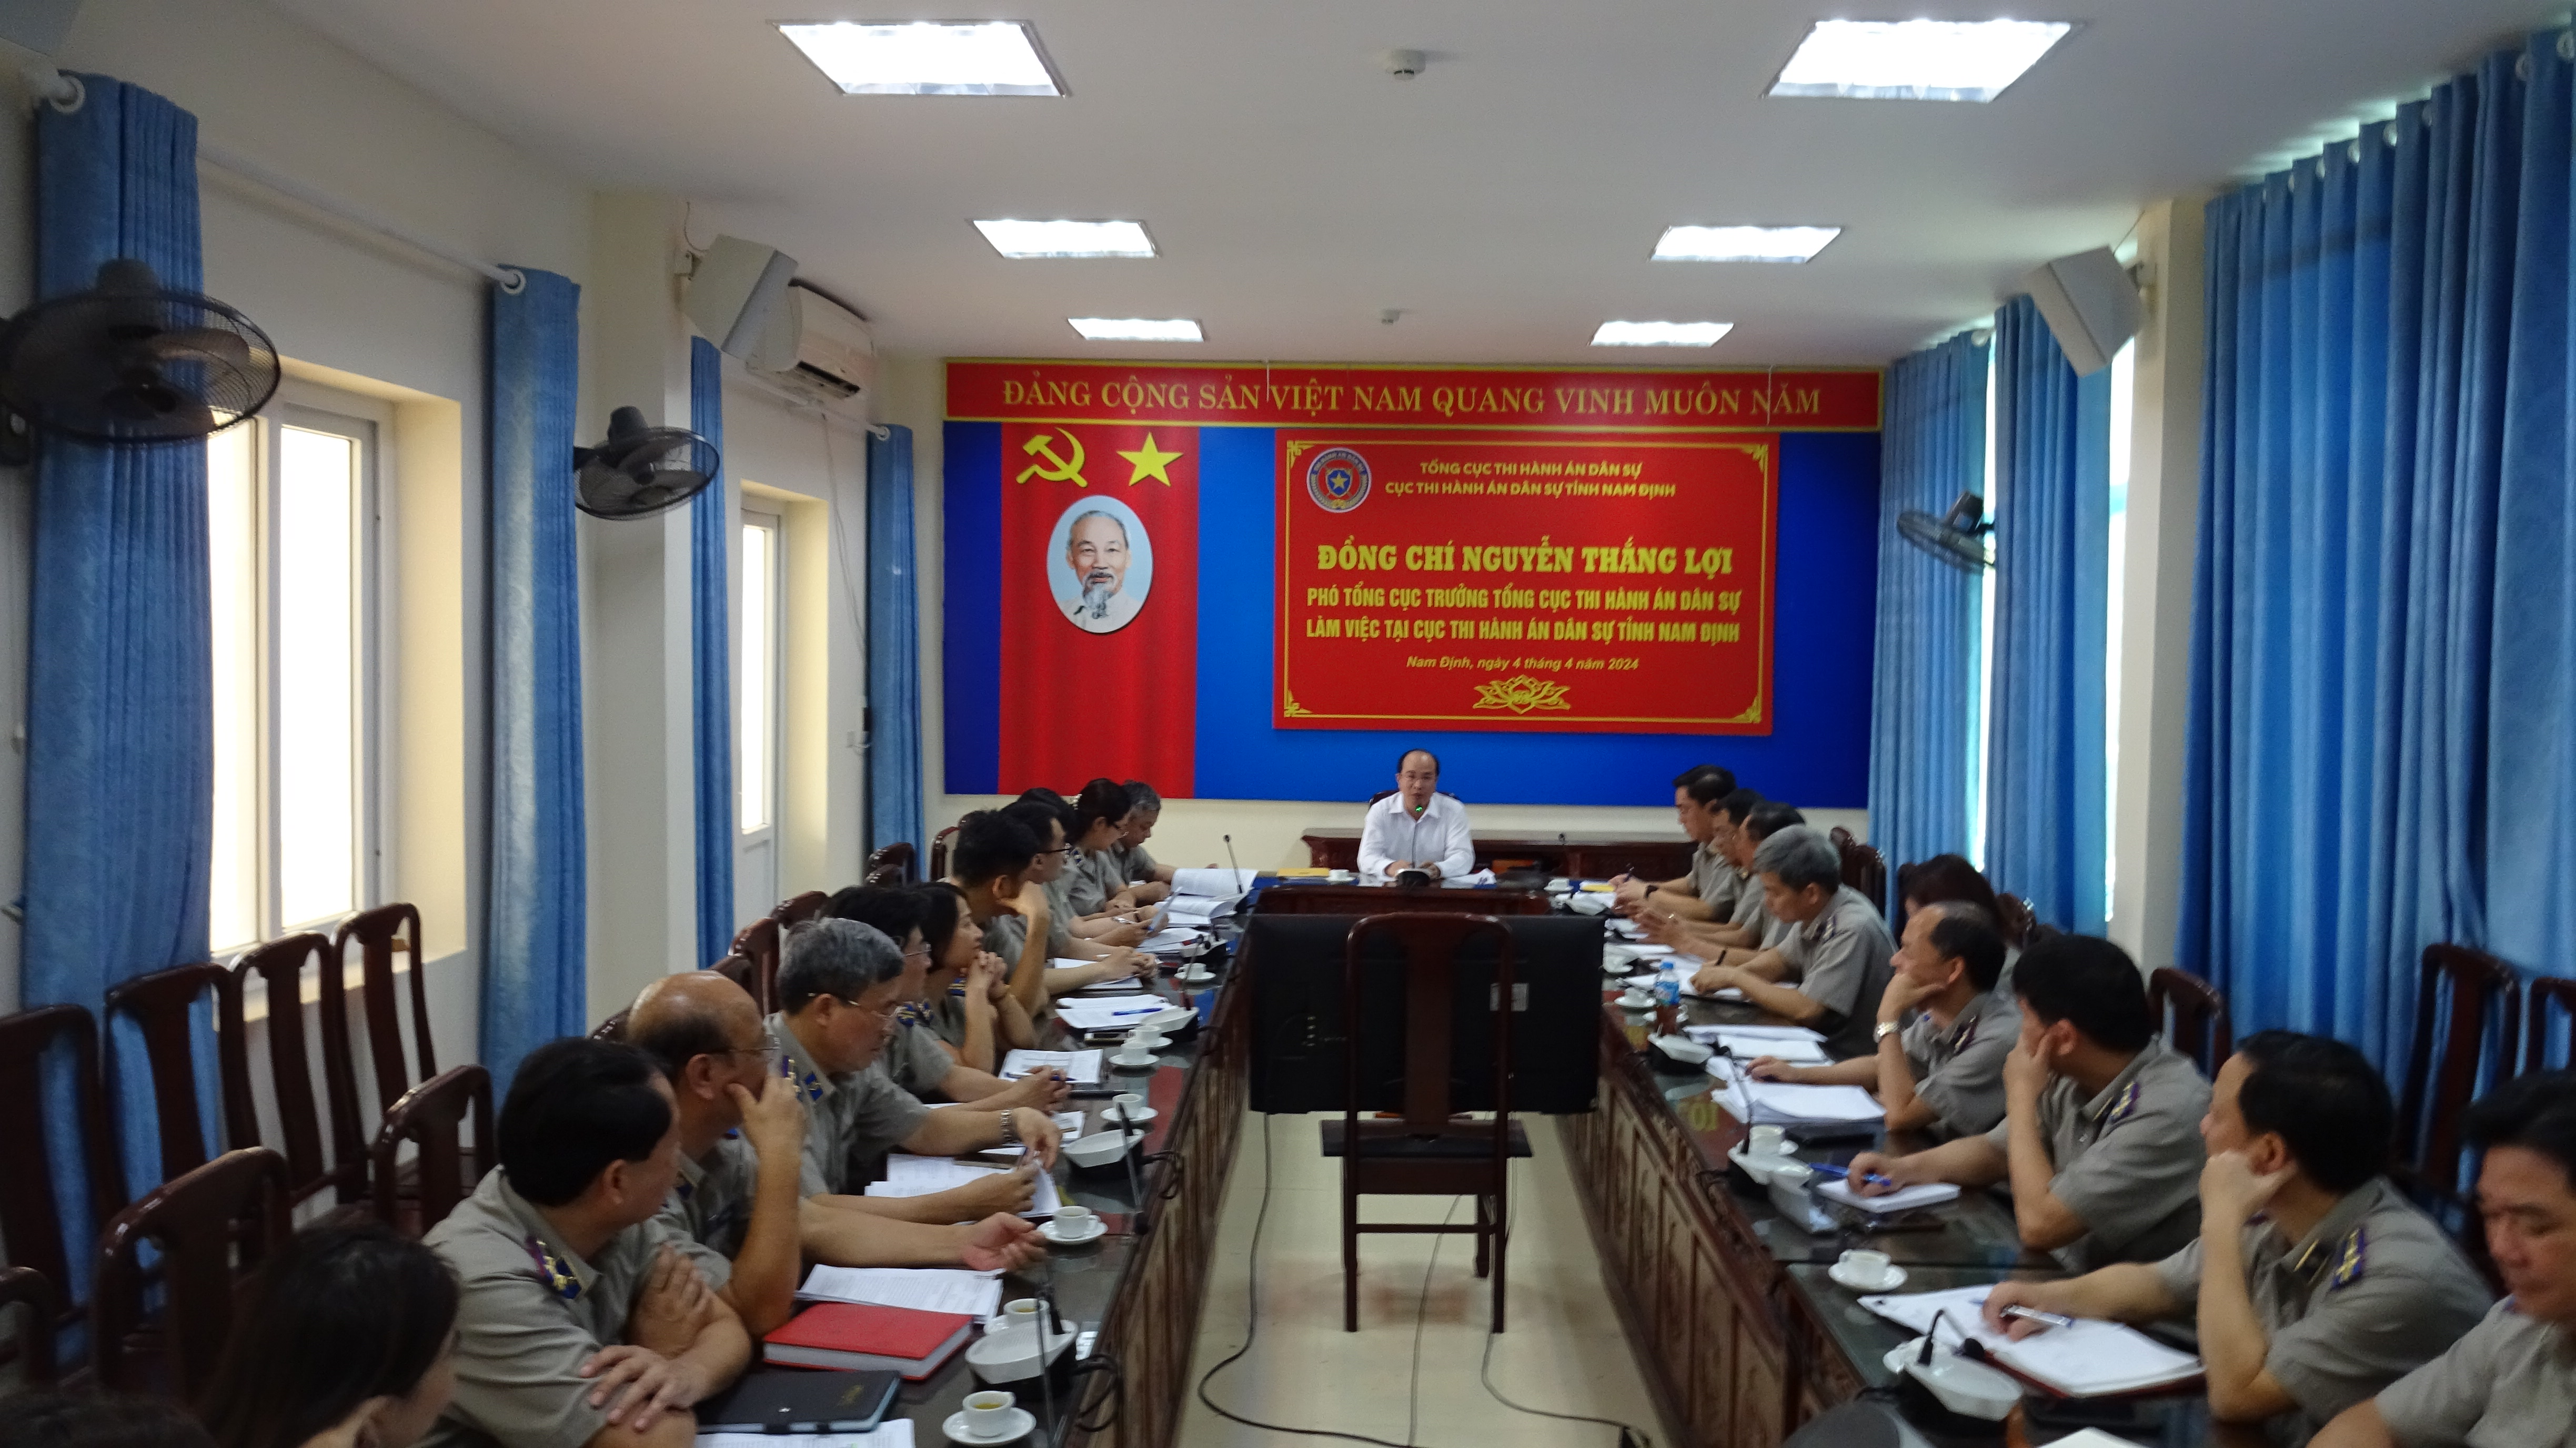 Phó Tổng cục trưởng Nguyễn Thắng Lợi làm việc với Cục Thi hành án dân sự tỉnh Nam Định